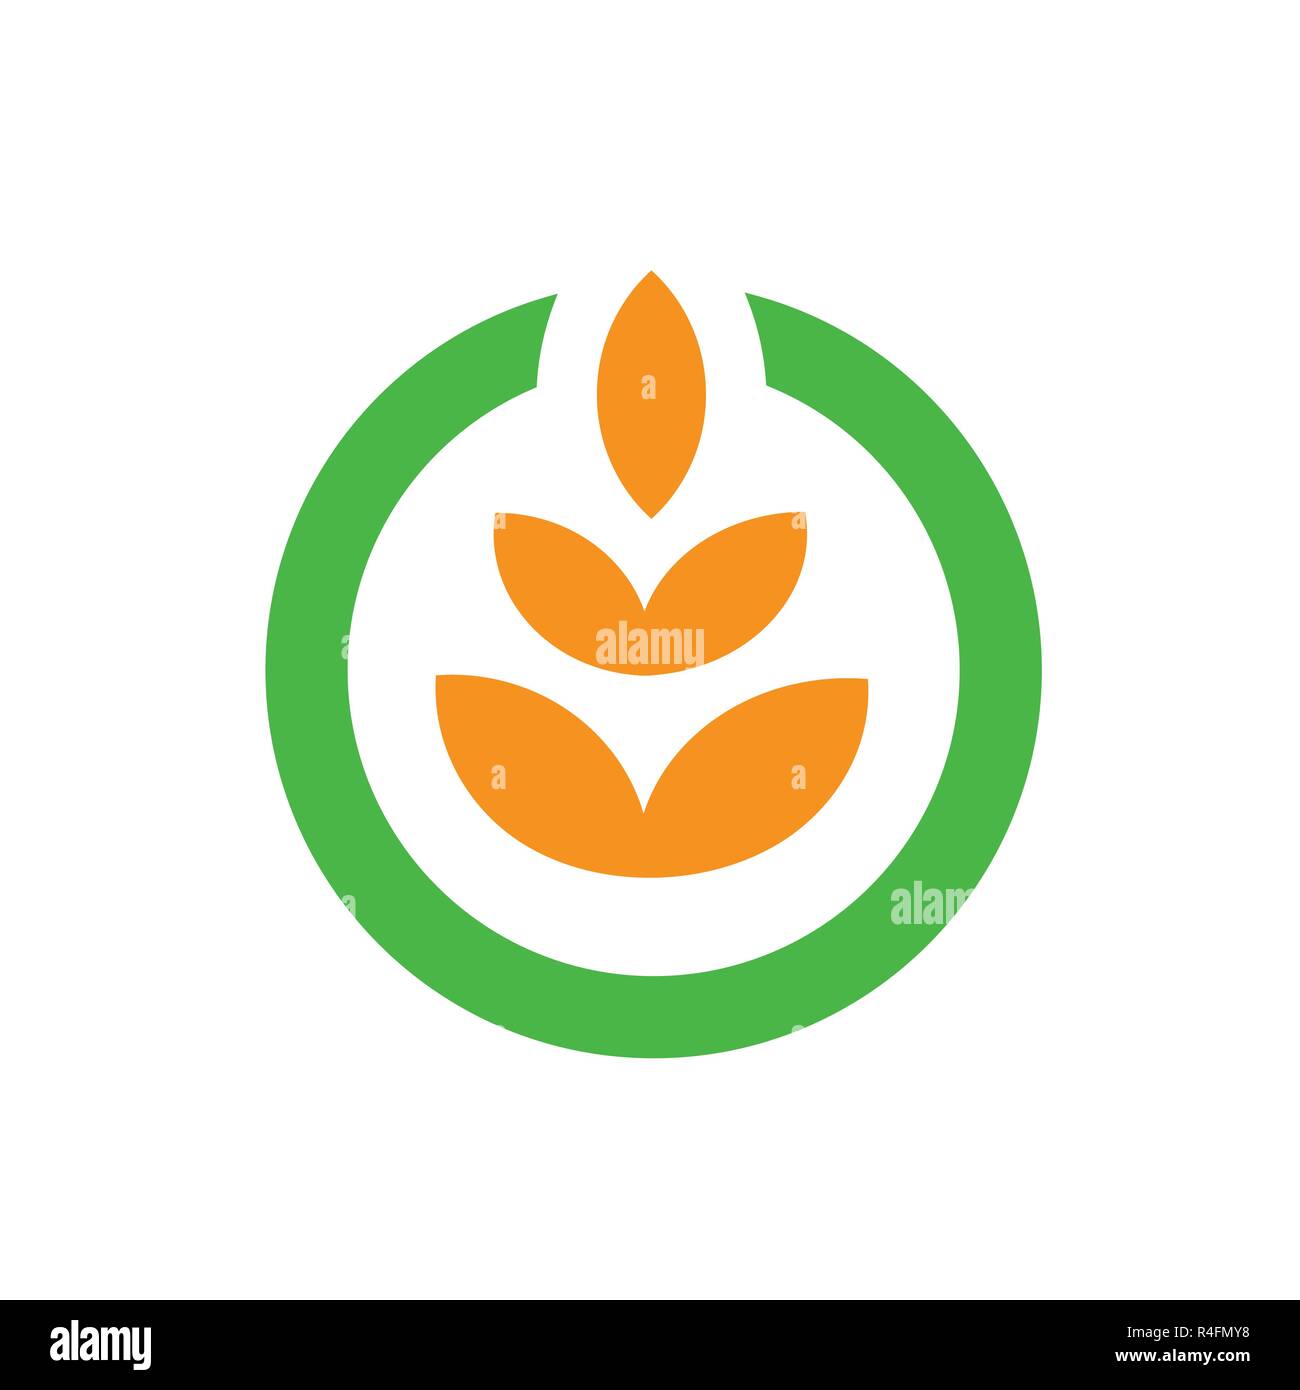 Landwirtschaft Logo Vektor. Schön und sauber logo Vorlage, für eine kreative Landwirtschaft, Bauernhof, Eco, Garten, etc. geeignet. Stock Vektor